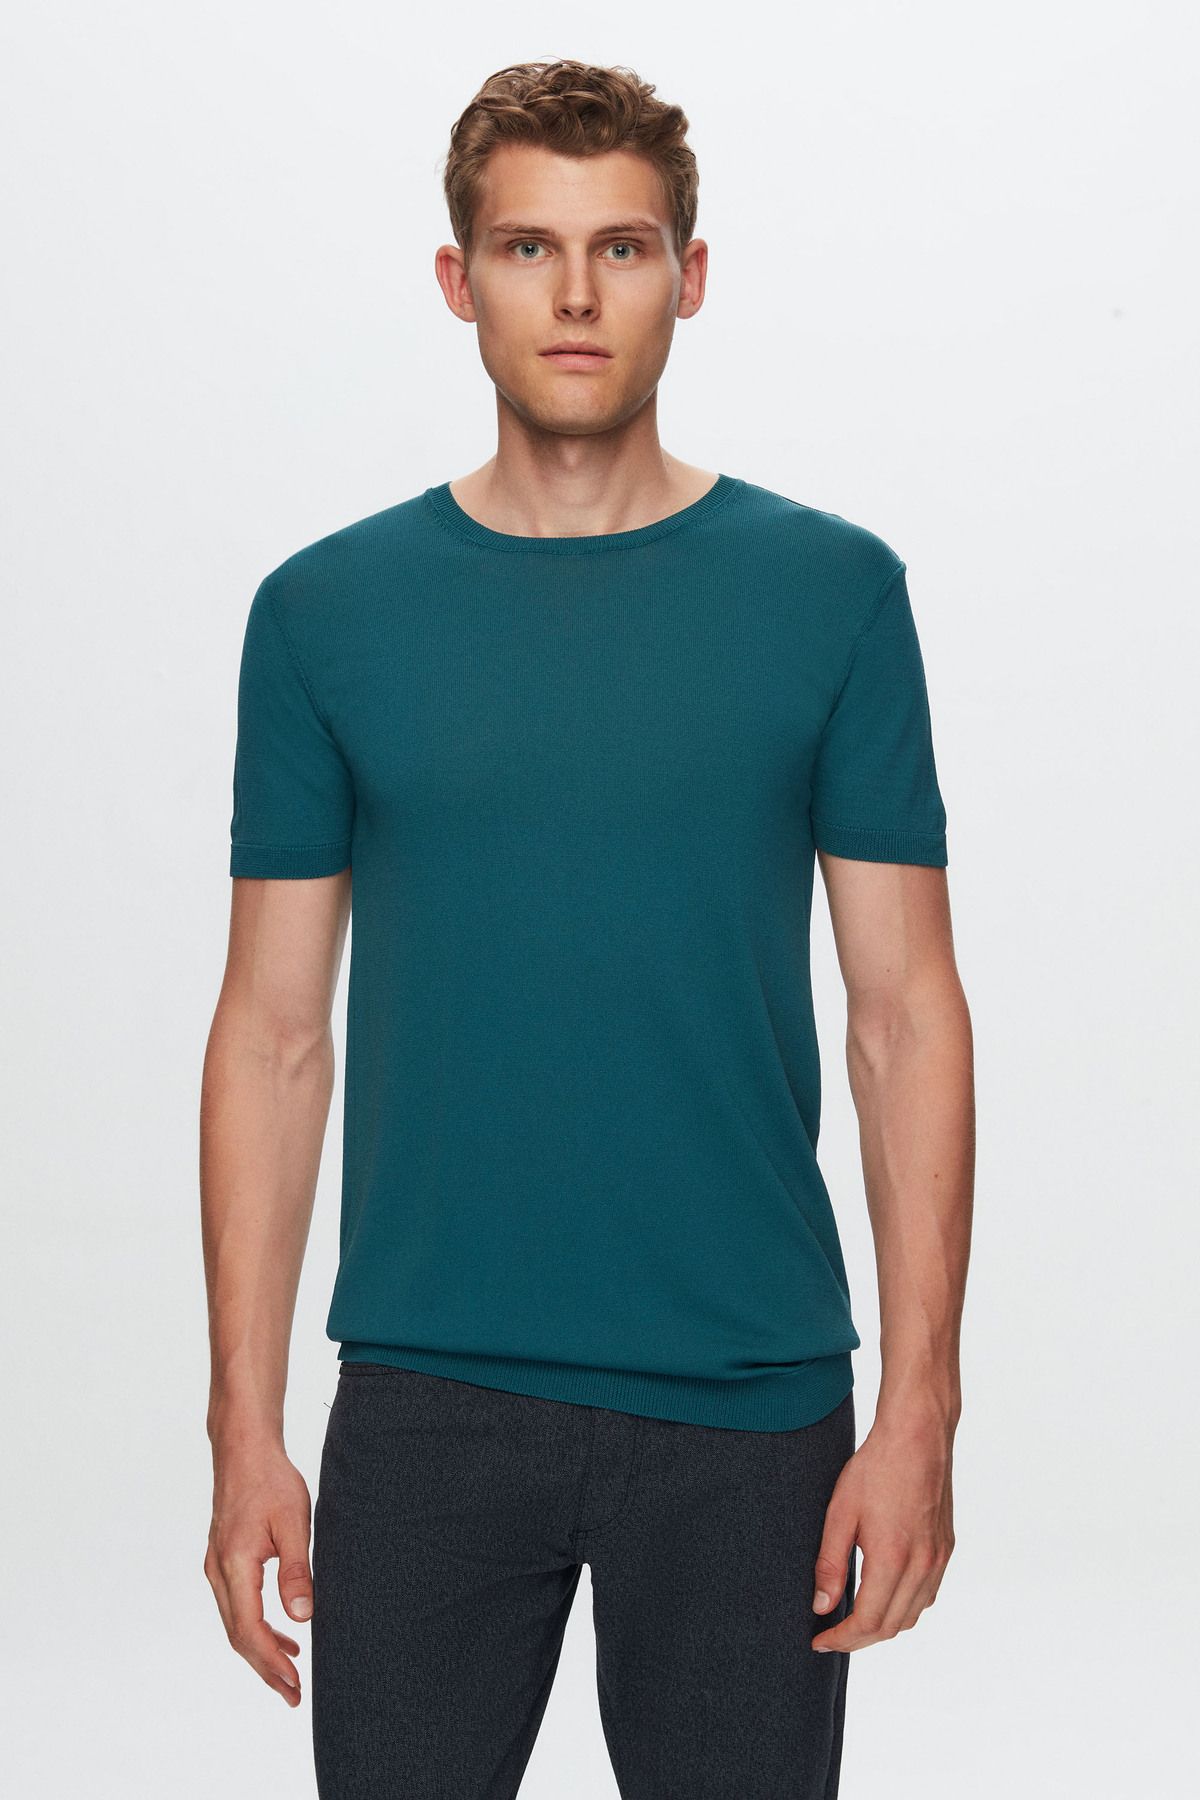 TWN Slim Fit Zümrüt Yeşili Düz Örgü Rayon Örme T-shirt